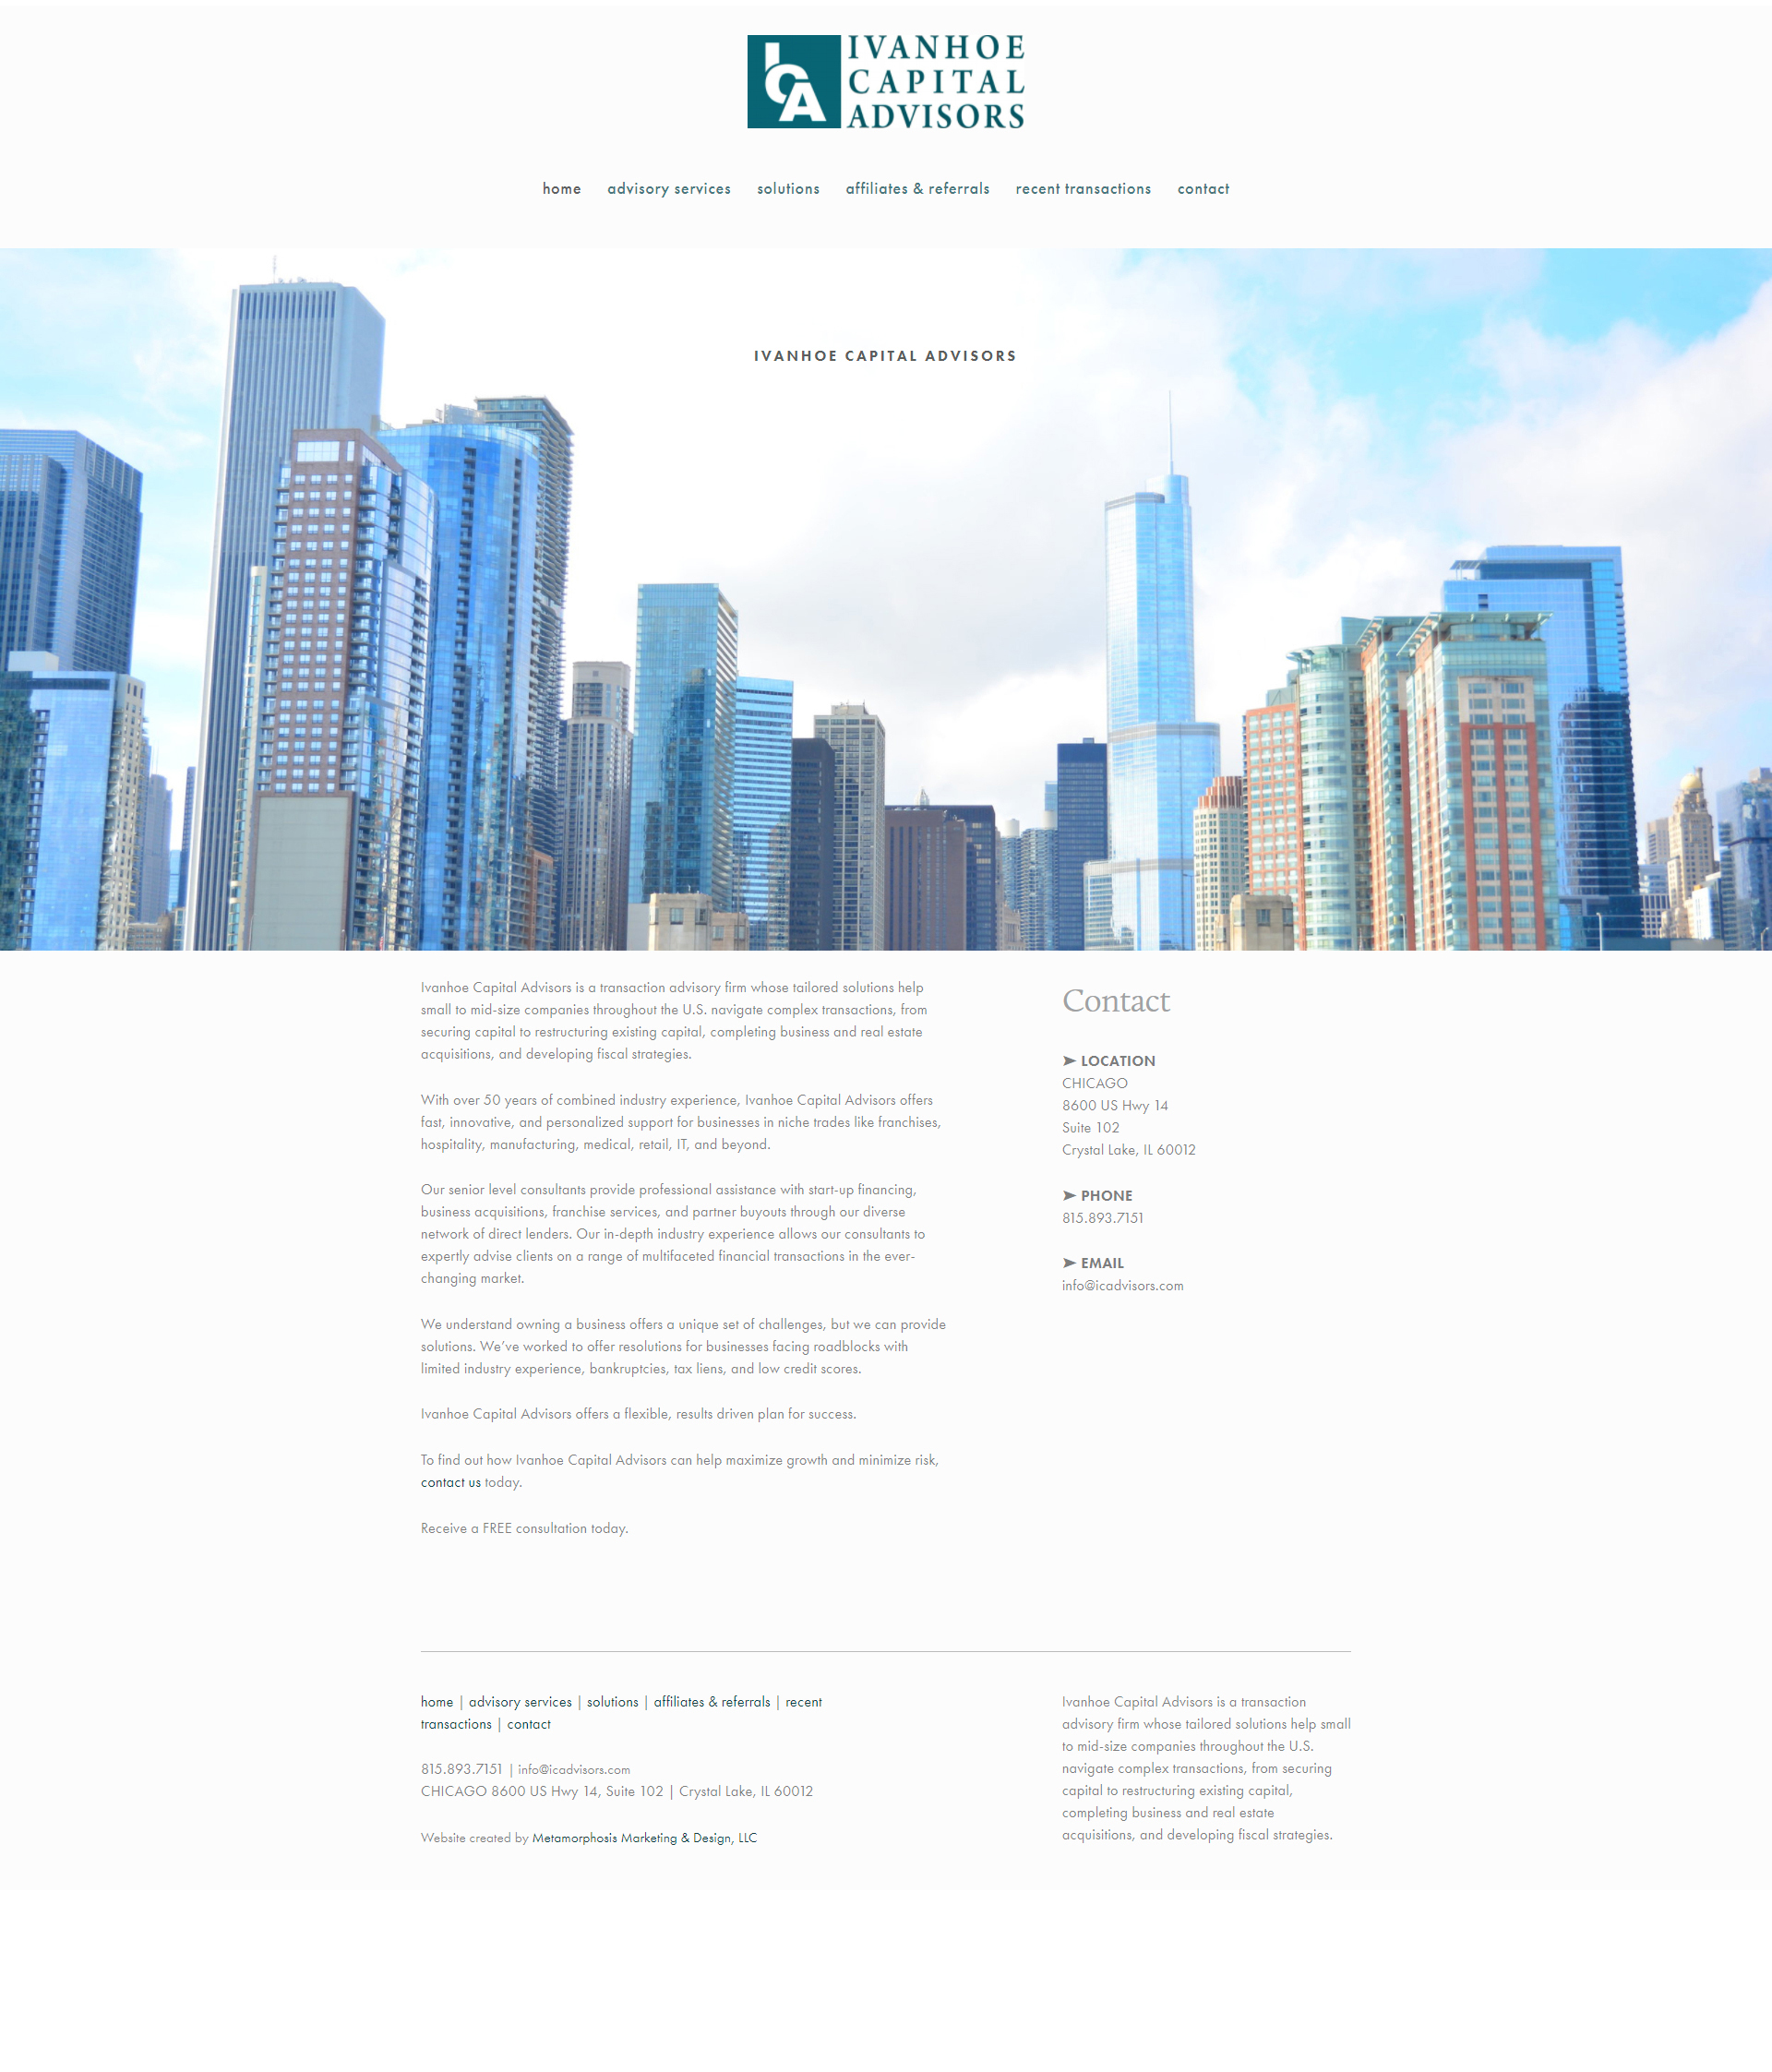 Ivanhoe Capital Website Redesign - Before